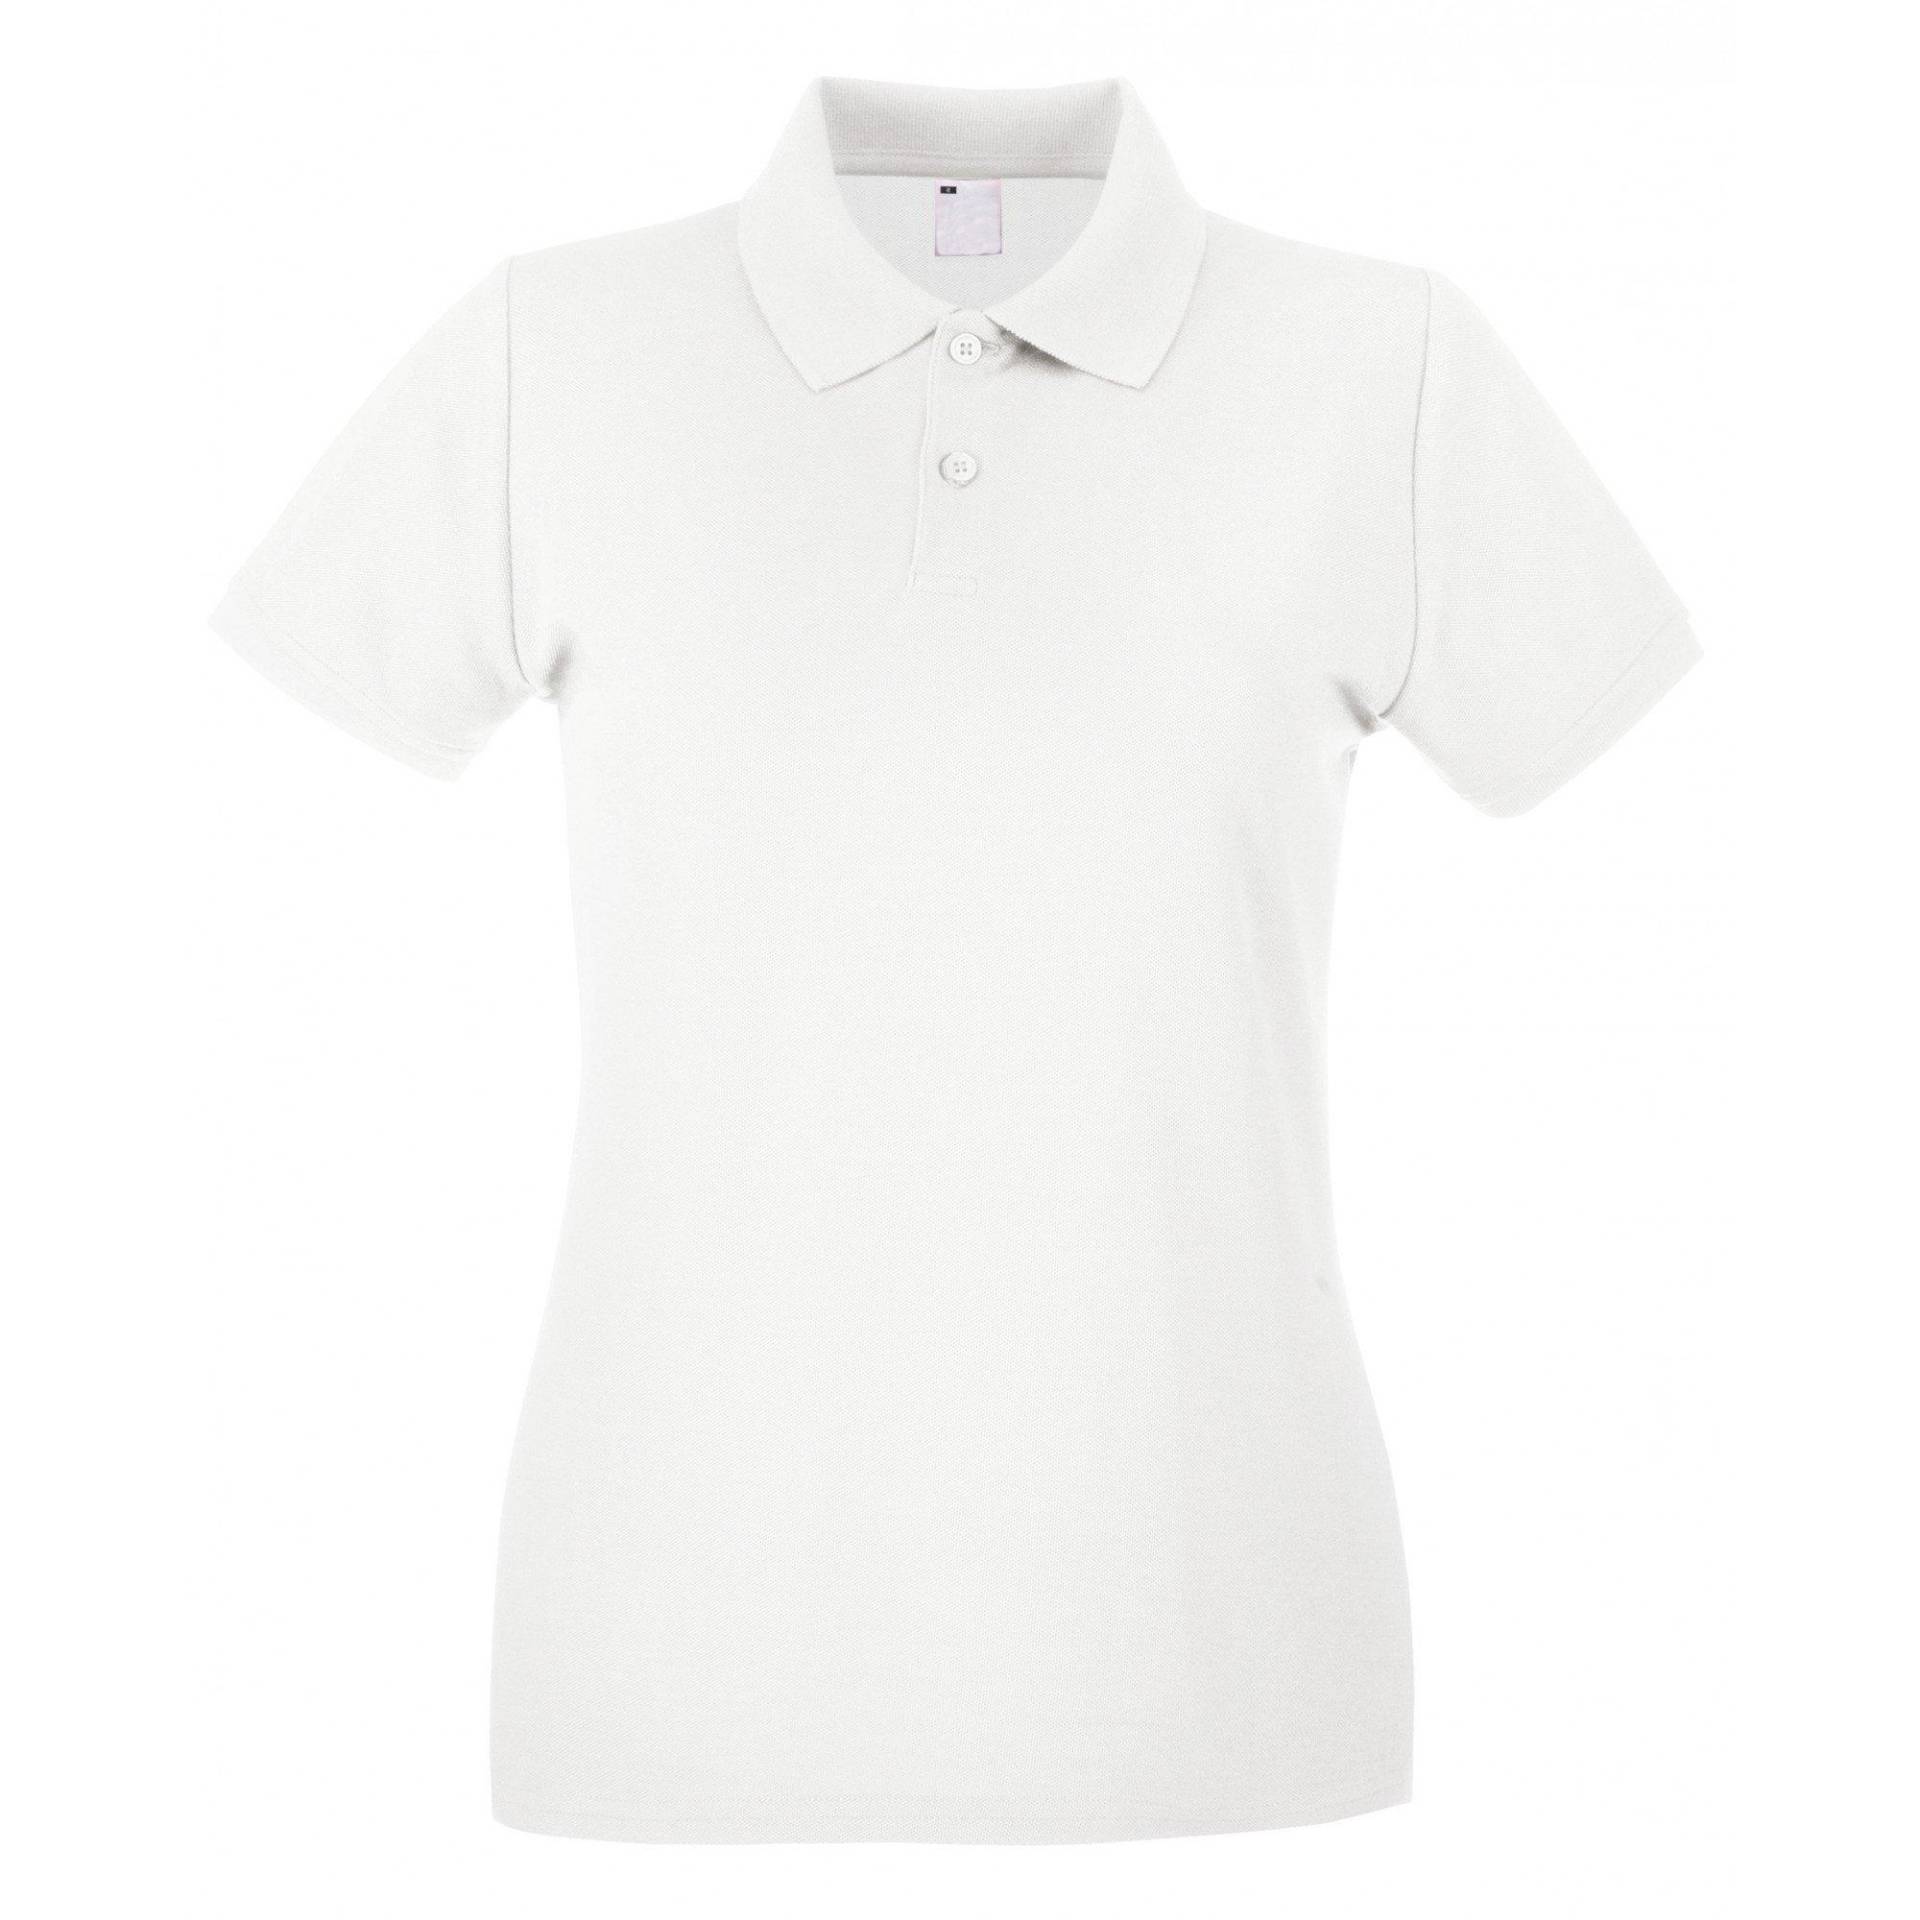 Poloshirt, Figurbetont, Kurzärmlig Damen Weiss S von Universal Textiles